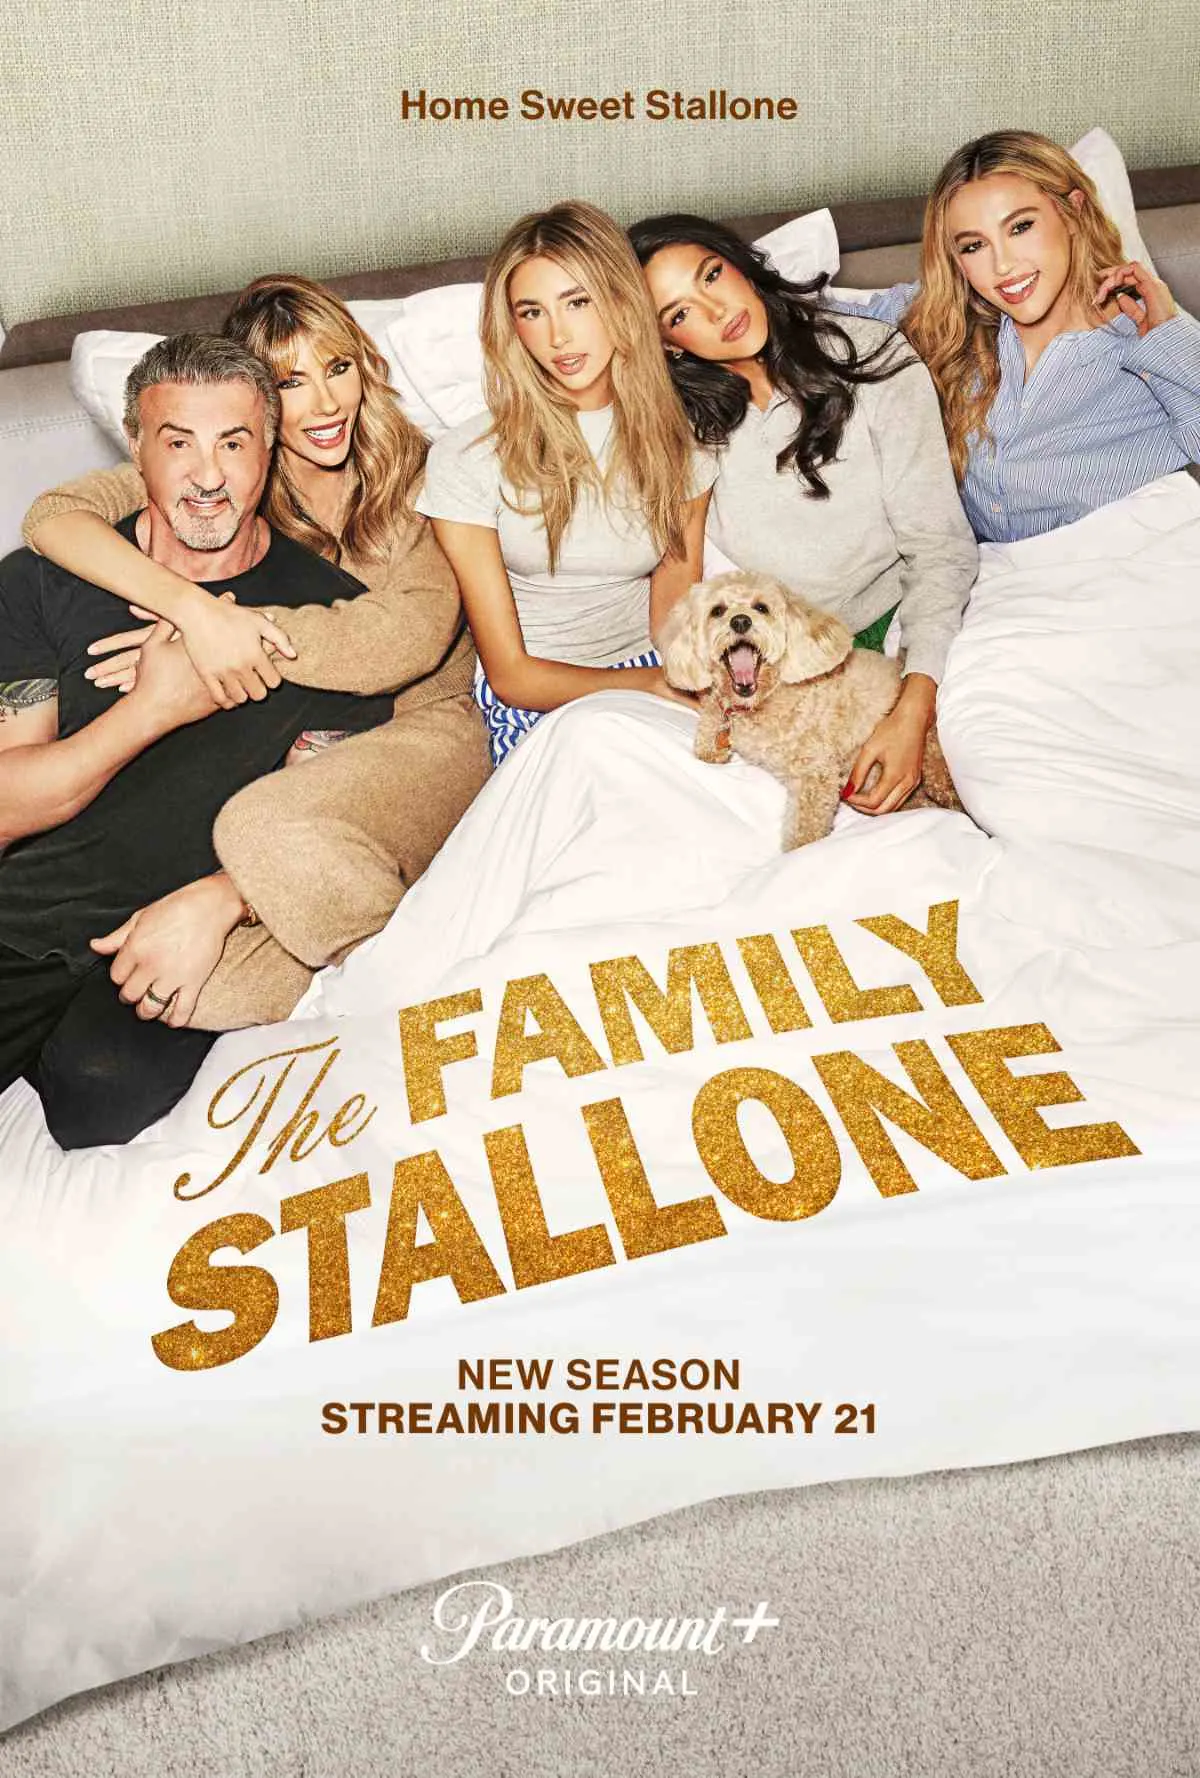 The Family Stallone Season 2